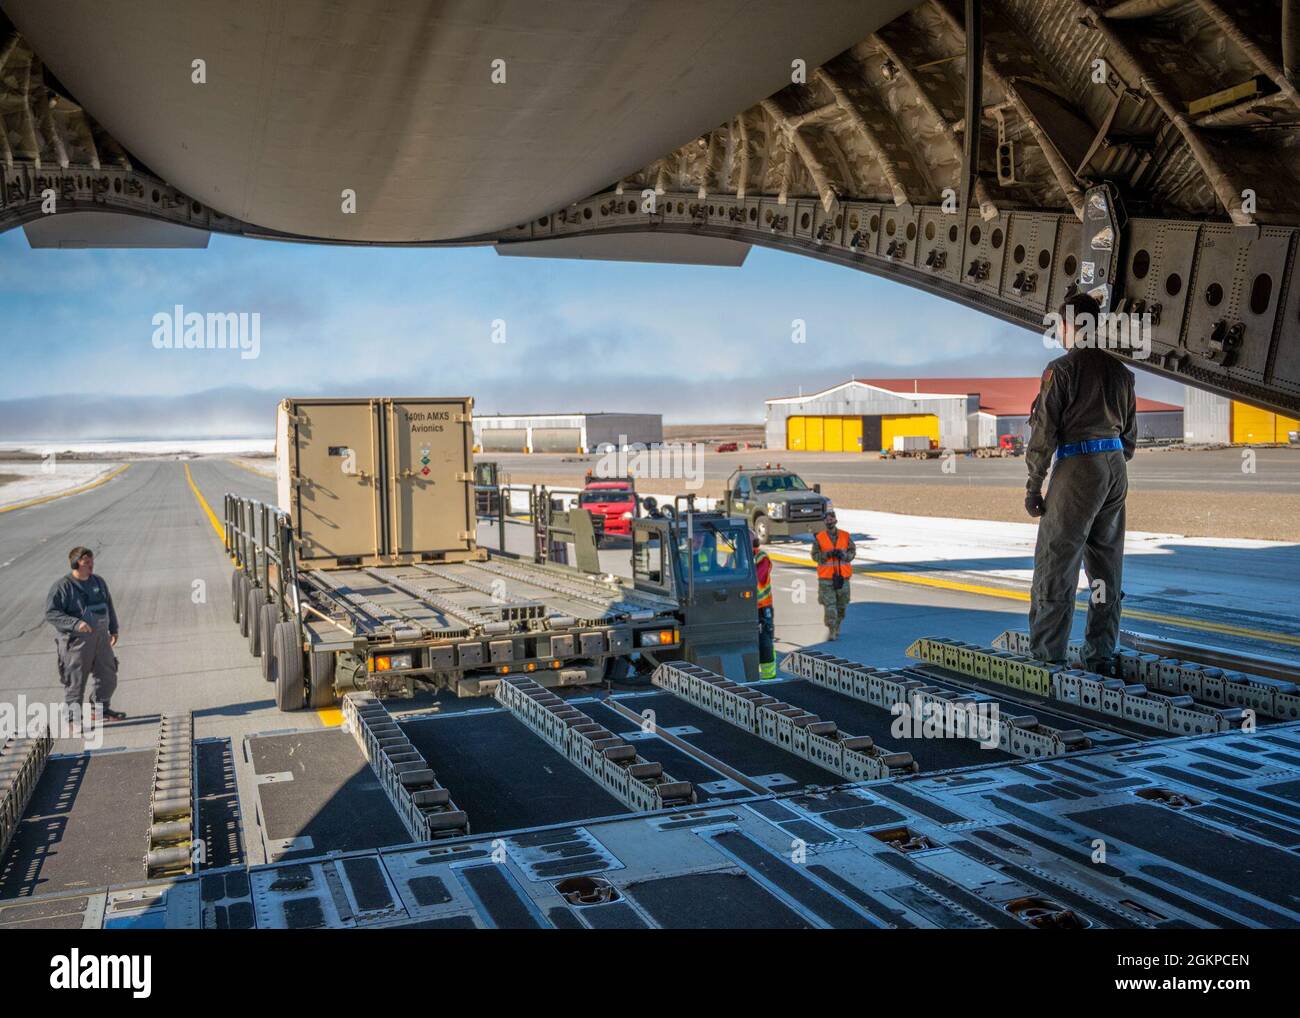 Les aviateurs de la US Air Force de la Garde nationale aérienne du Colorado de la 140e Escadre déchargent du fret pendant l'exercice Aralgam Dart 21-1, le 11 juin 2021 à la base aérienne de Thule, au Groenland. L'exercice Aralgam Dart se tiendra du 10 au 19 juin 2021, avec des opérations dans toute l'Arctique, de la mer de Beaufort à Thule, au Groenland. Amalgame Dart 21-01 offre au NORAD l'occasion de perfectionner ses compétences en matière de défense continentale, à mesure que les forces canadiennes et américaines opèrent ensemble dans l'Arctique. Commandement binational canadien et Ameican, le NORAD utilise un réseau de capteurs spatiaux, aériens et terrestres, de navires-citernes de ravitaillement air-air et de figues Banque D'Images